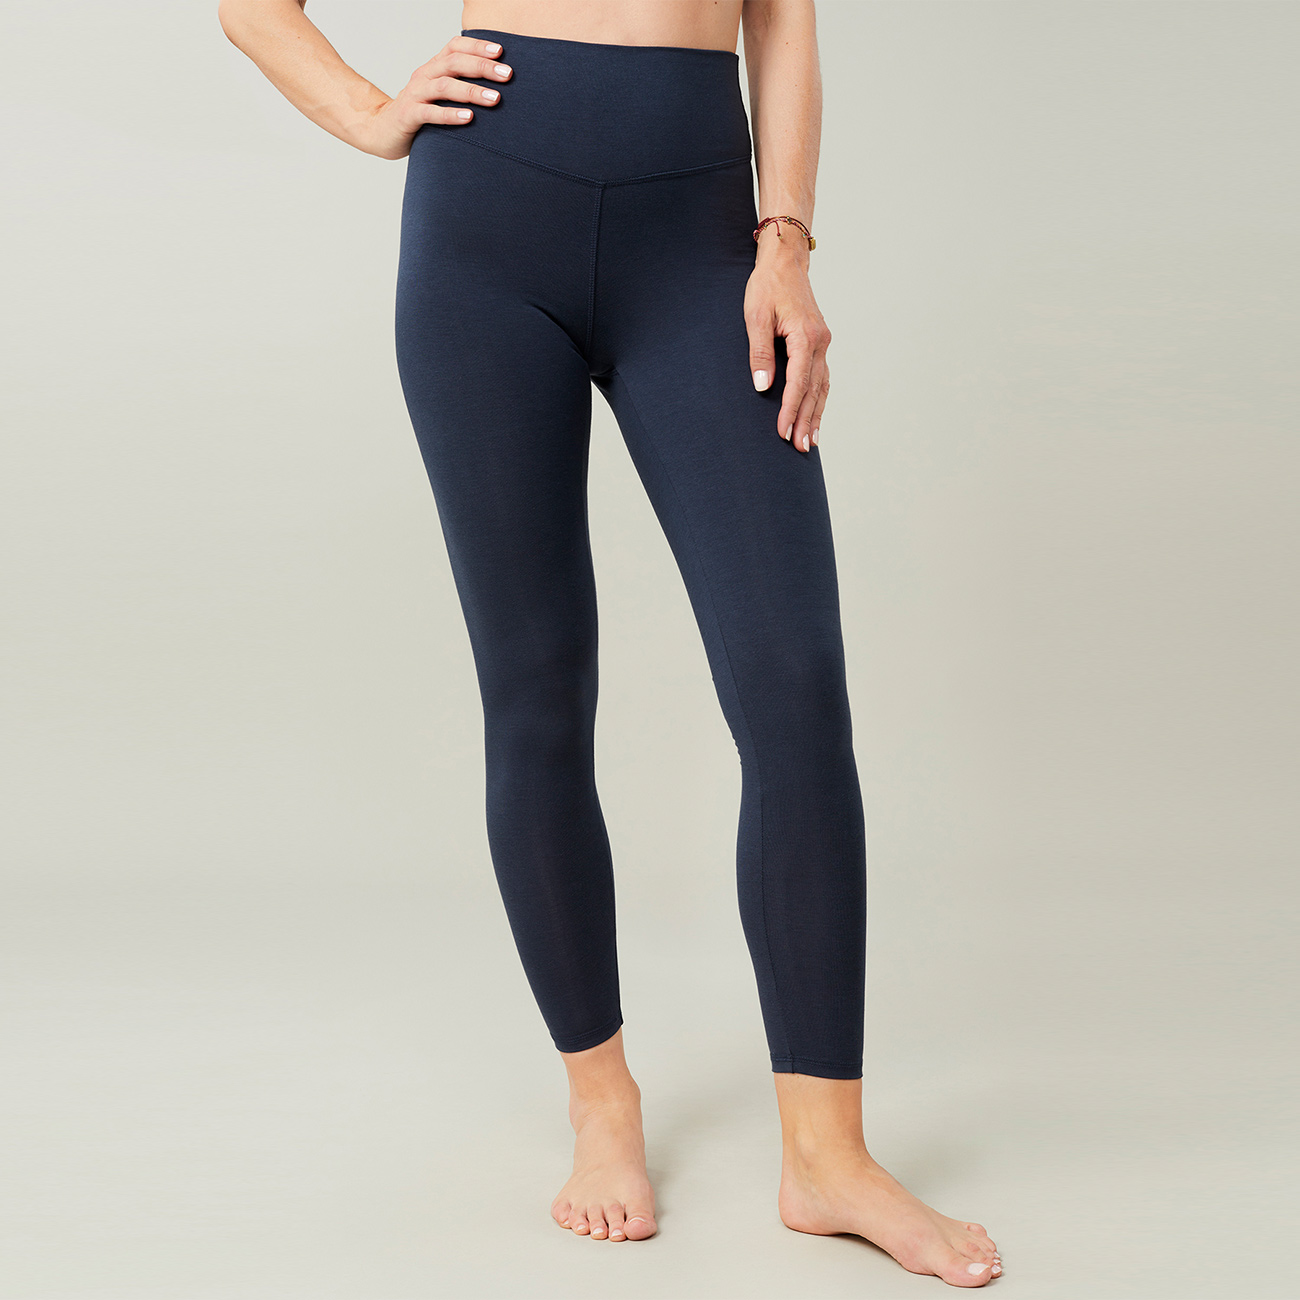 Solid Knee Length Short Spandex Yoga Leggings 3 Pack – Glass House